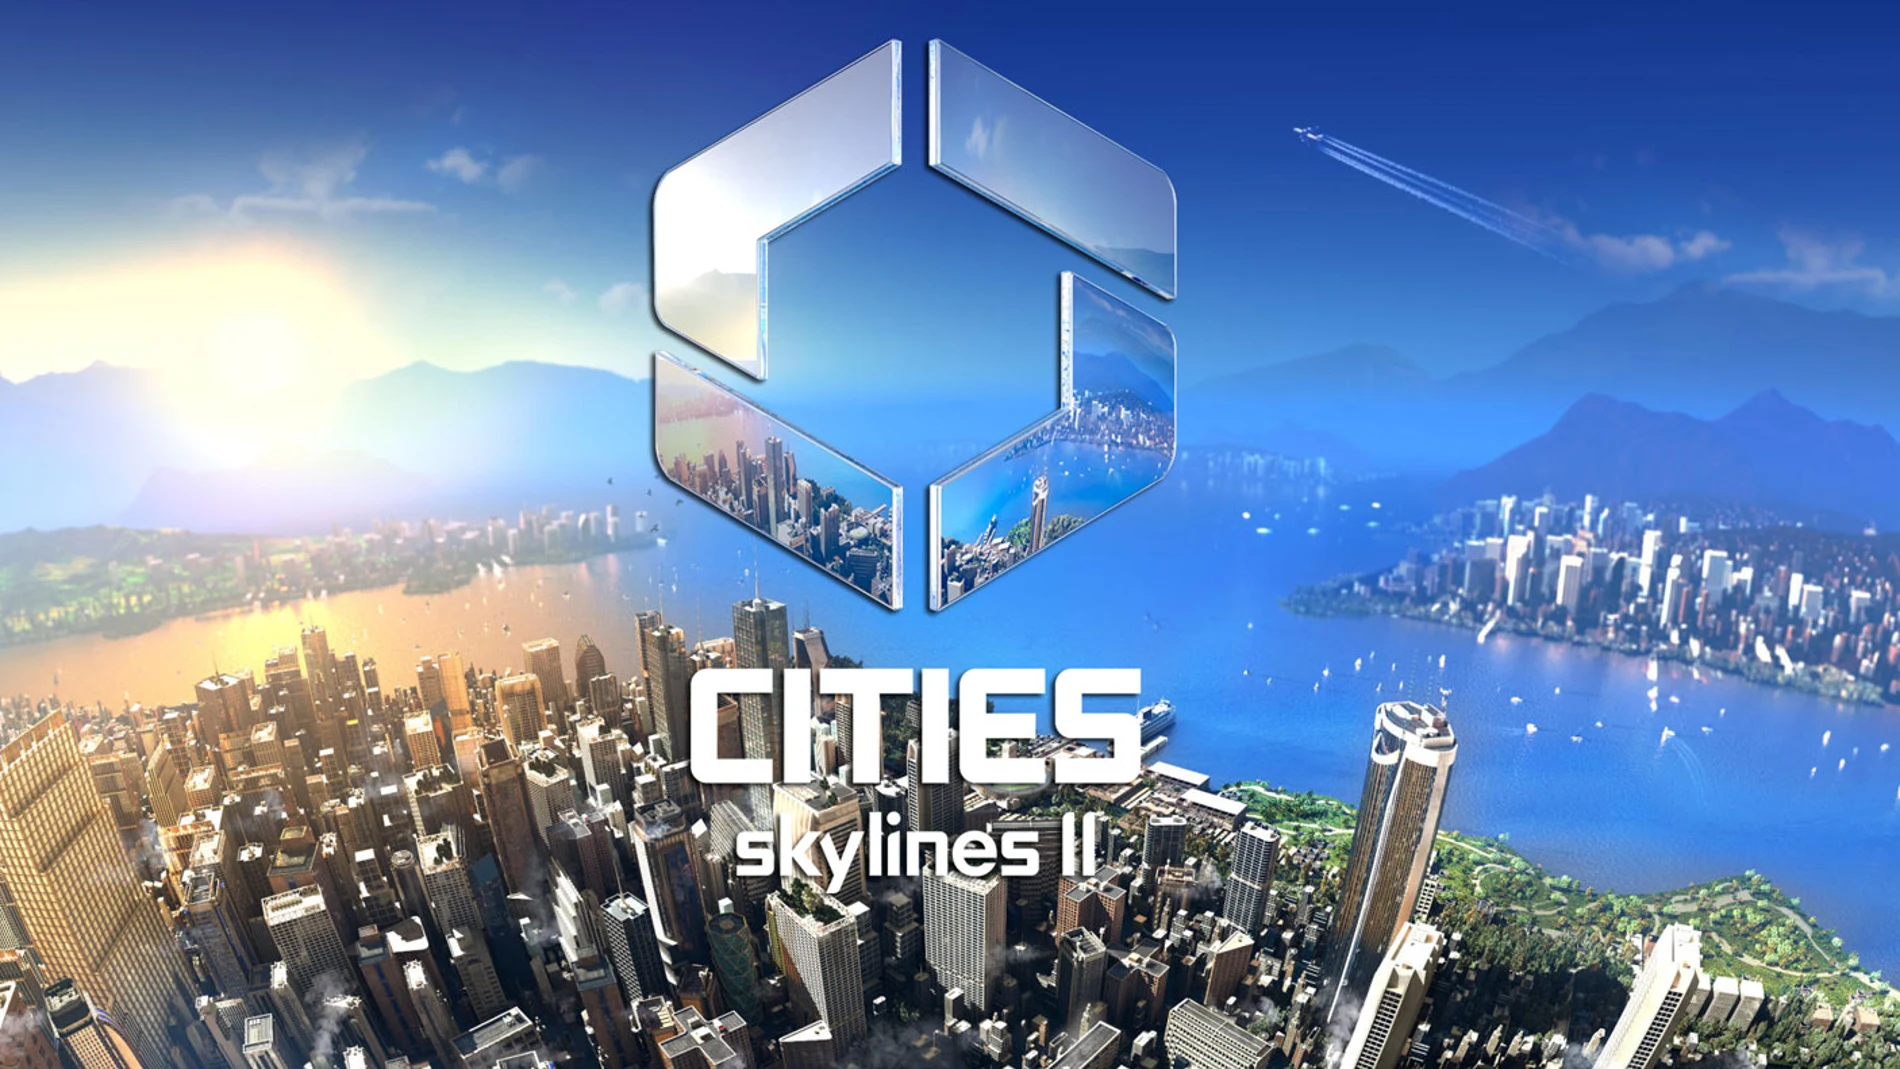 Estos son los requisitos de Cities Skylines 2 en PC, y ya os adelantamos  que sacarle jugo va a costar bastante, aunque nada muy loco - Cities: Skylines  2 - 3DJuegos